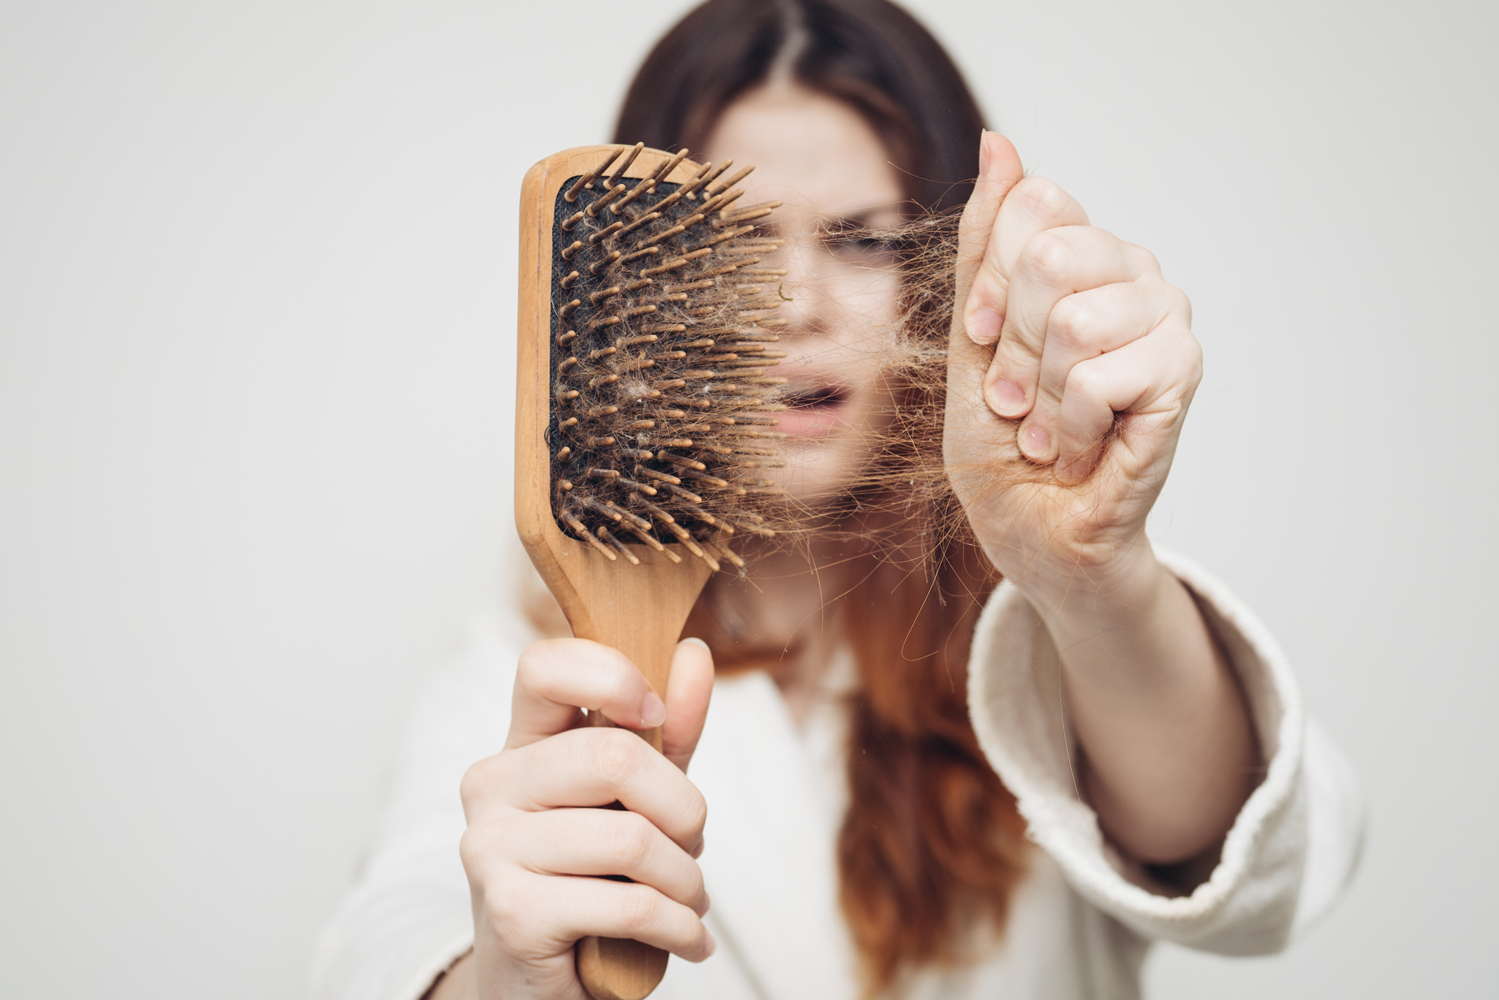 Какое средство помогает легко расчесывать волосы